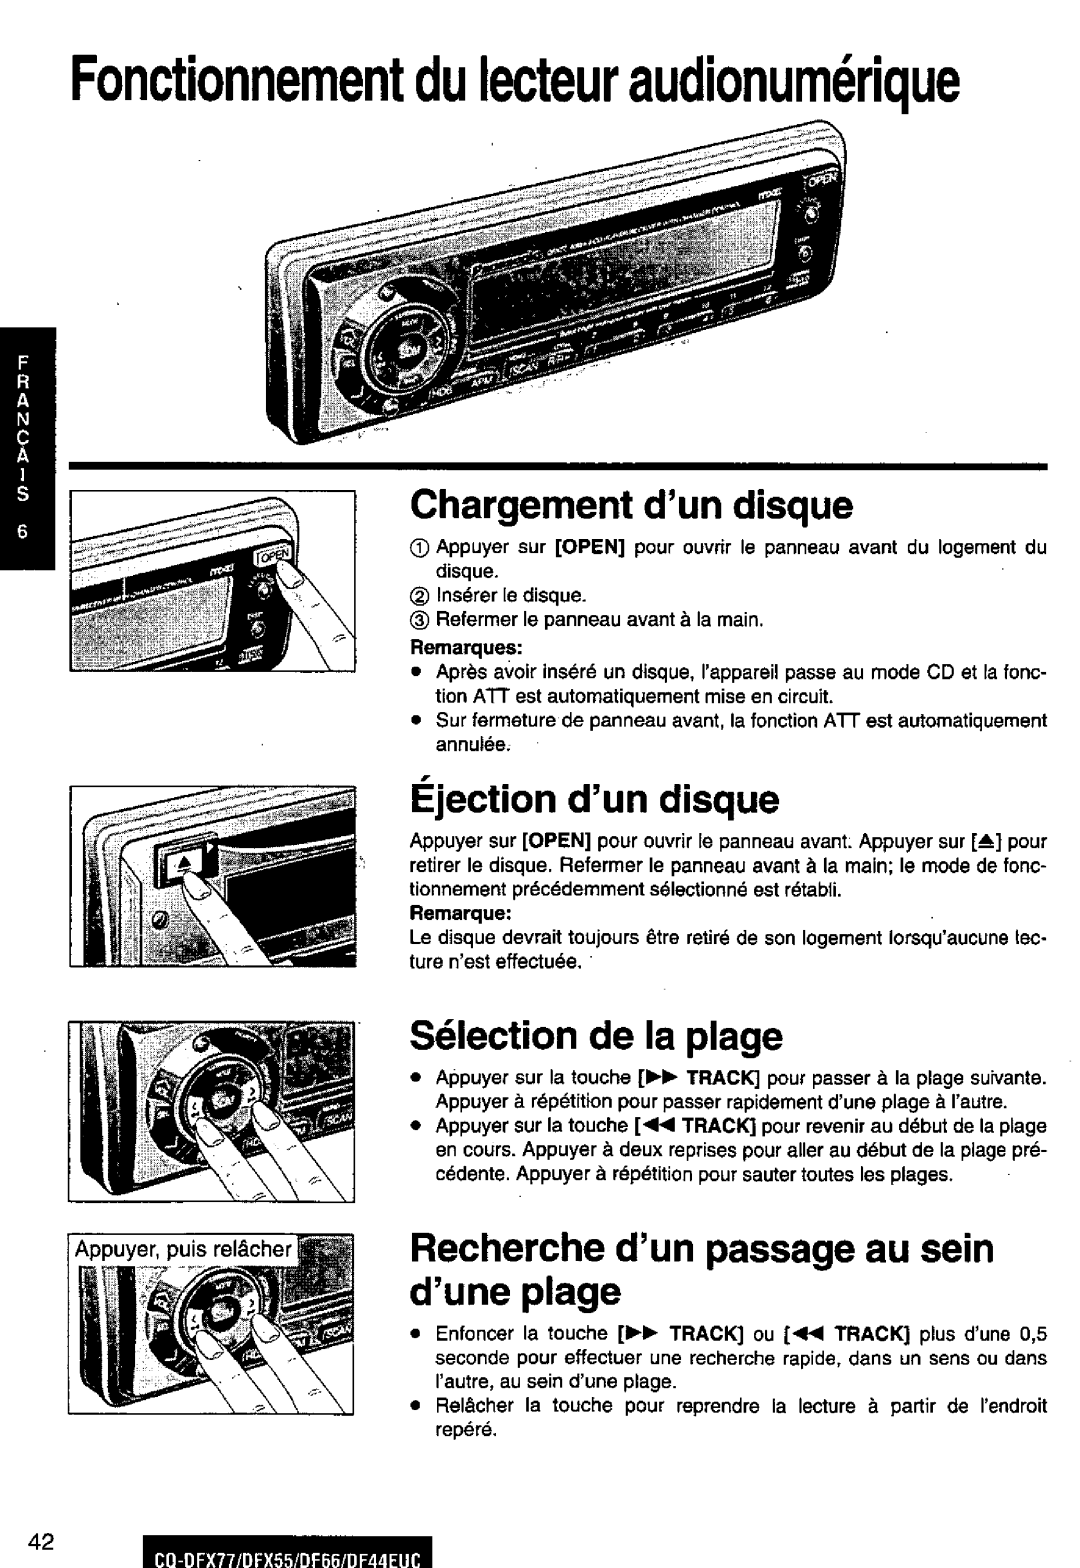 Panasonic DF44EUC, CQ-DFX77, DF66EUC, CQ-DFX55 manual 